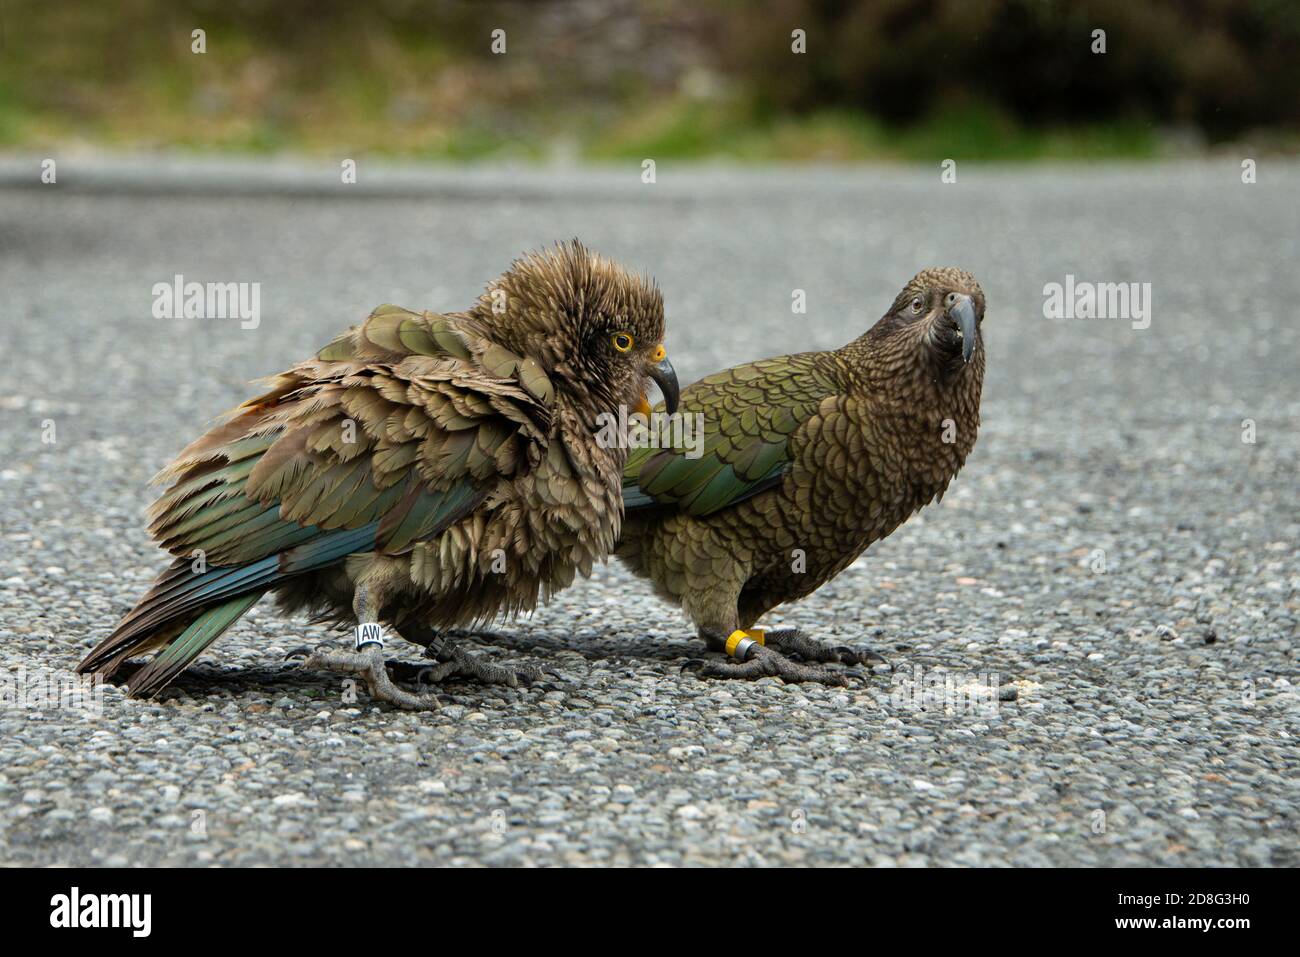 Ritratto in primo piano di due uccelli contrassegnati Kea, l'unico vero pappagallo alpino del mondo, l'Isola del Sud della Nuova Zelanda Foto Stock